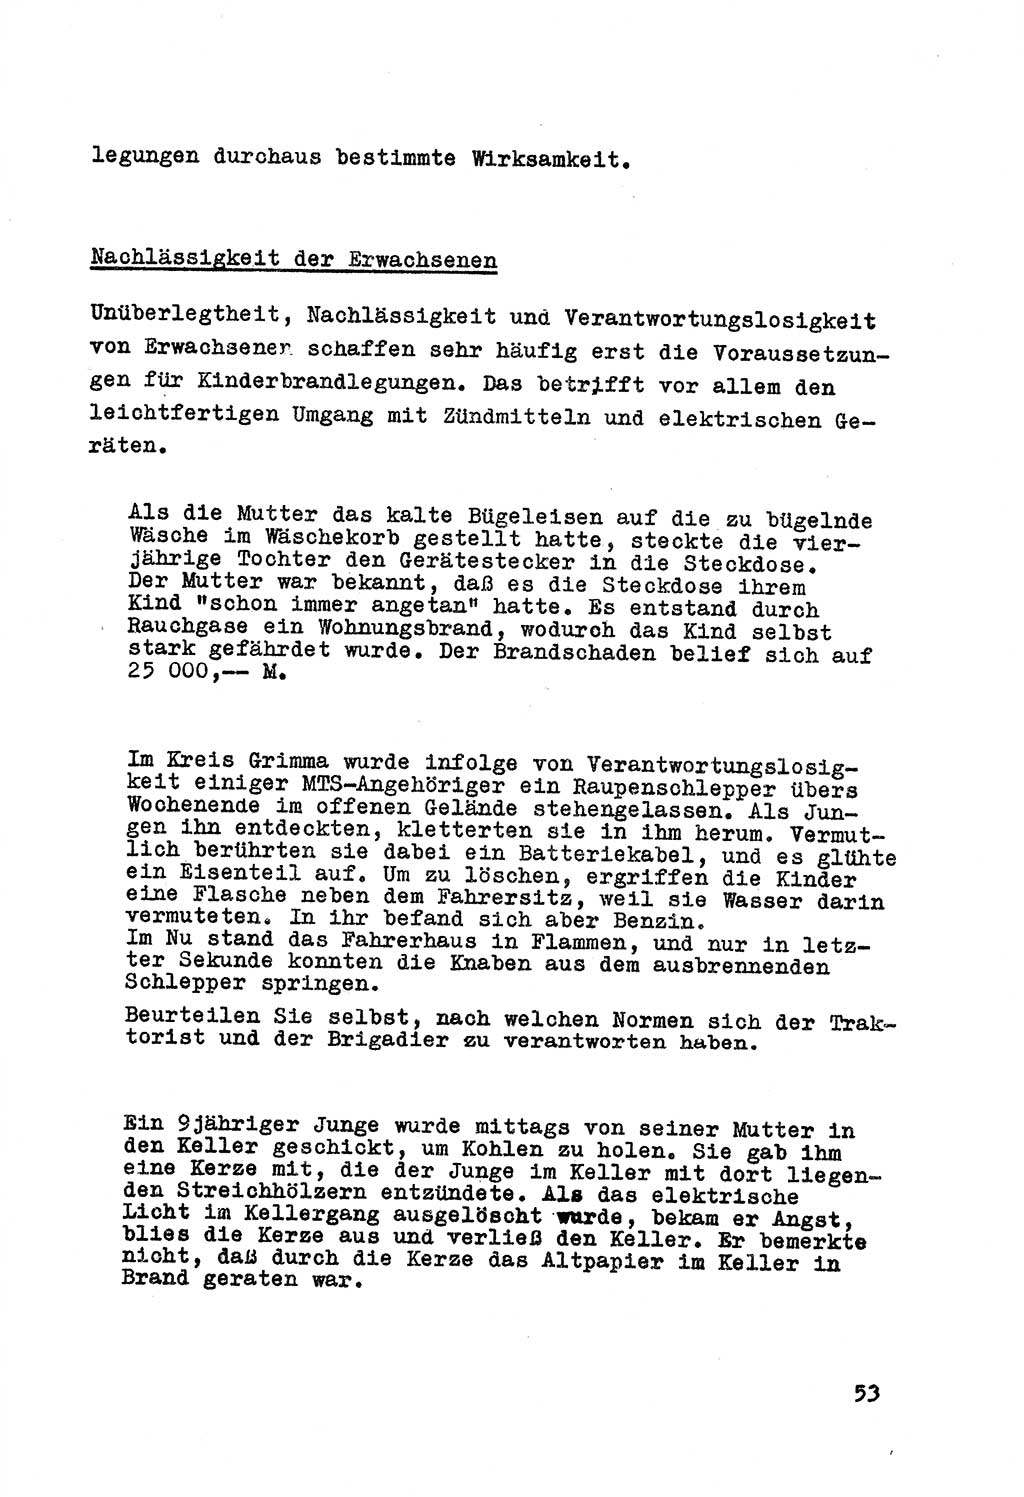 Strafrecht der DDR (Deutsche Demokratische Republik), Besonderer Teil, Lehrmaterial, Heft 7 1970, Seite 53 (Strafr. DDR BT Lehrmat. H. 7 1970, S. 53)